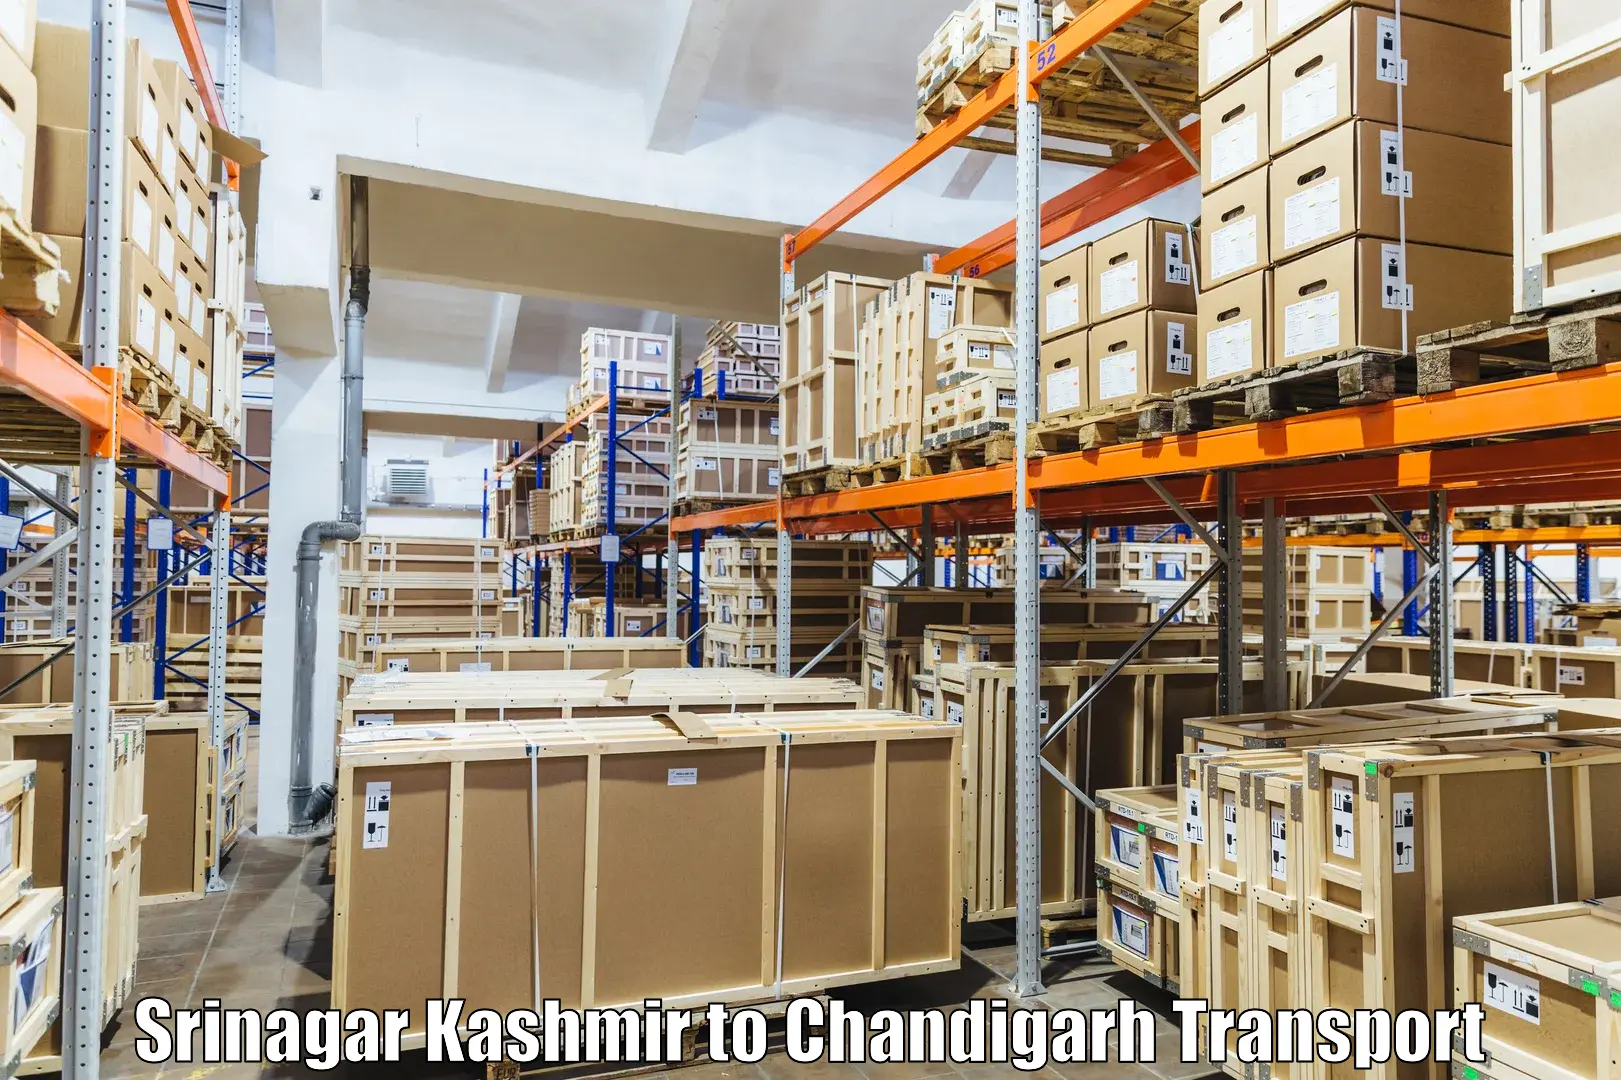 Nationwide transport services Srinagar Kashmir to Chandigarh